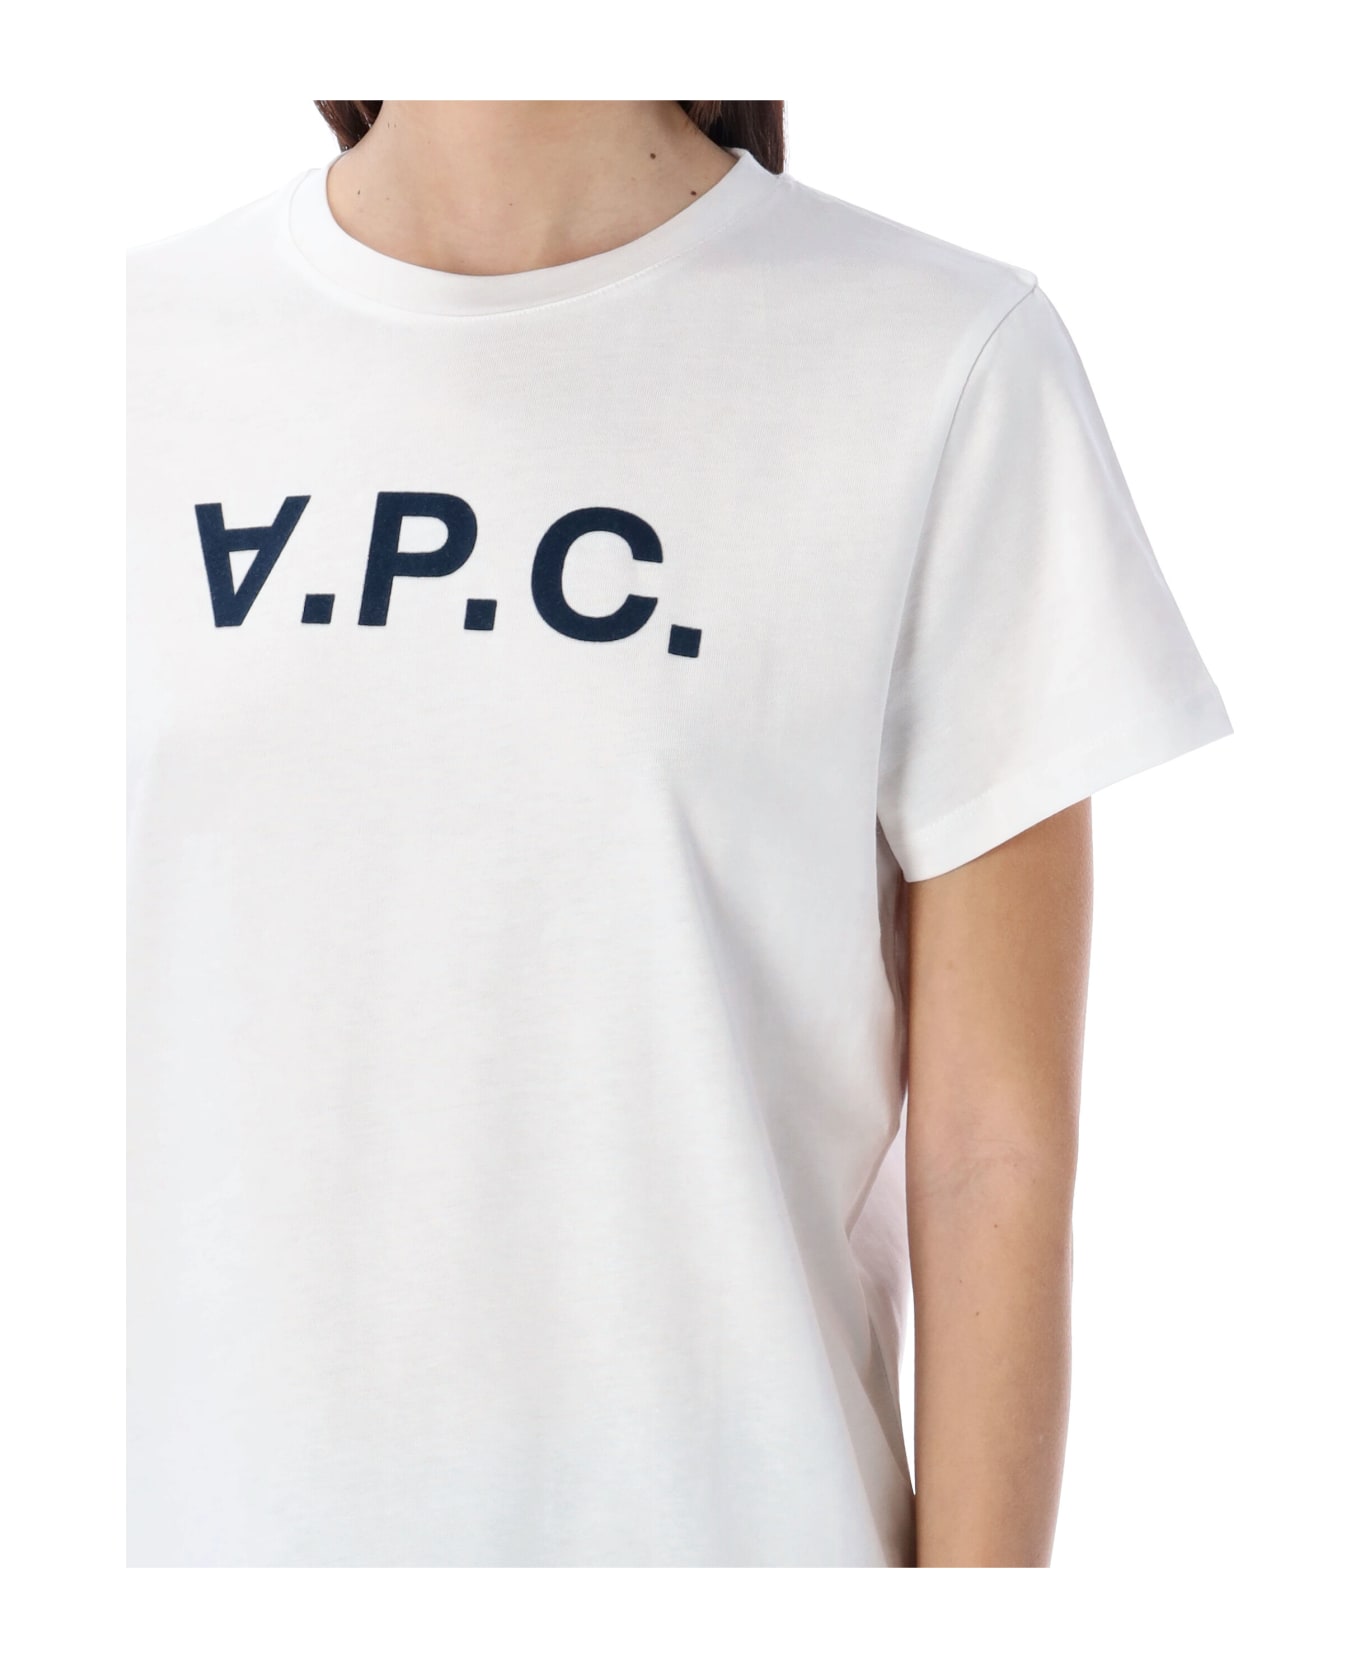 A.P.C. Vpc T-shirt - WHITE/DARK NAVY